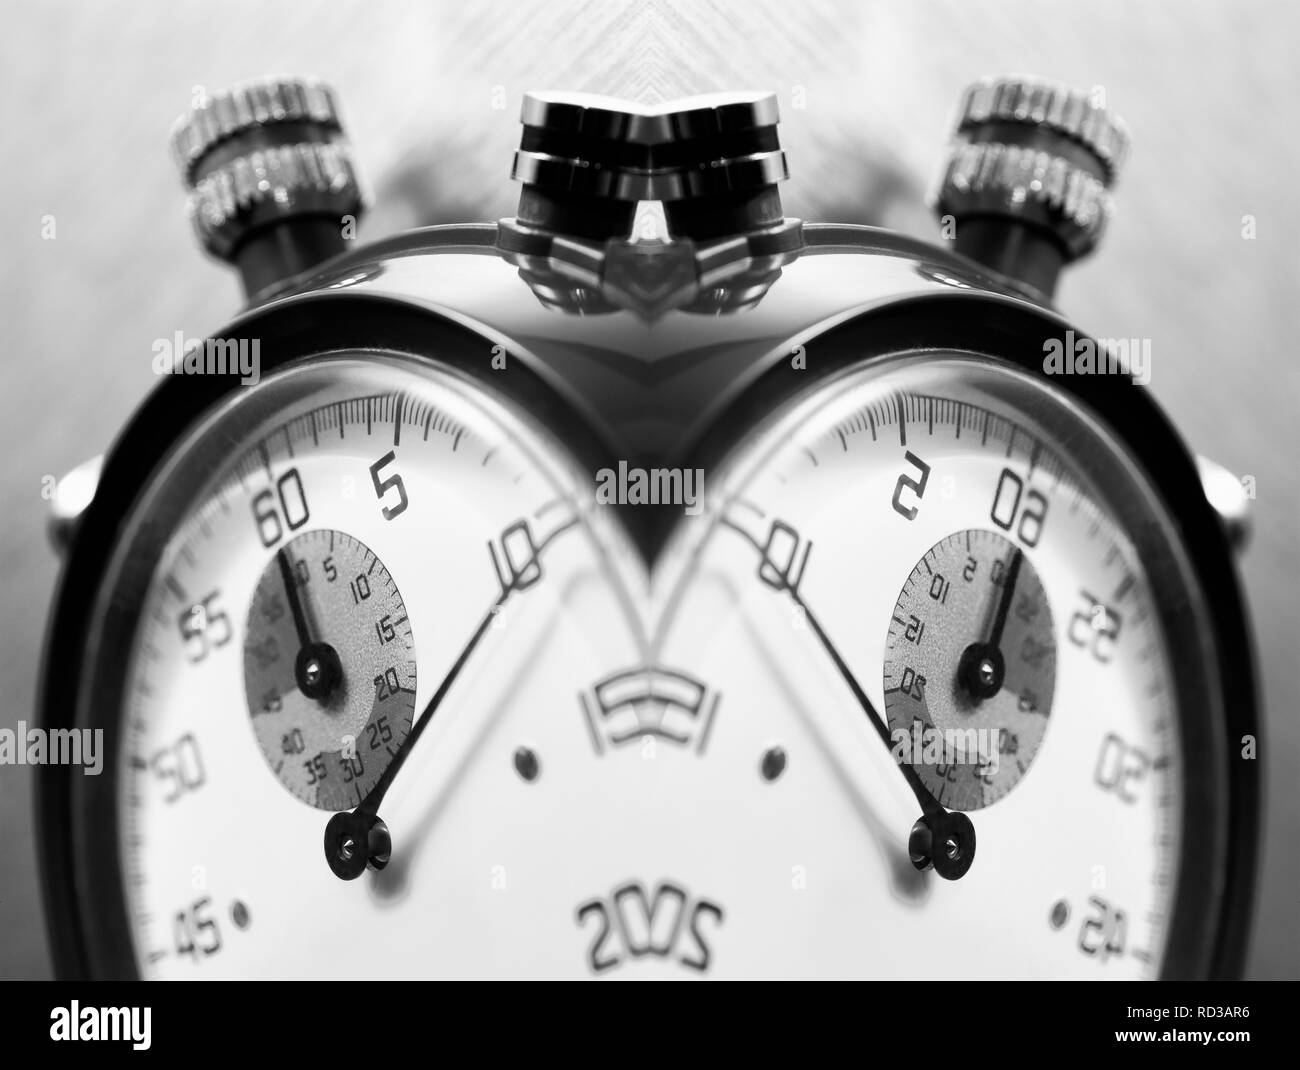 Bianco e nero effetto specchio immagine di un cronometro Foto Stock